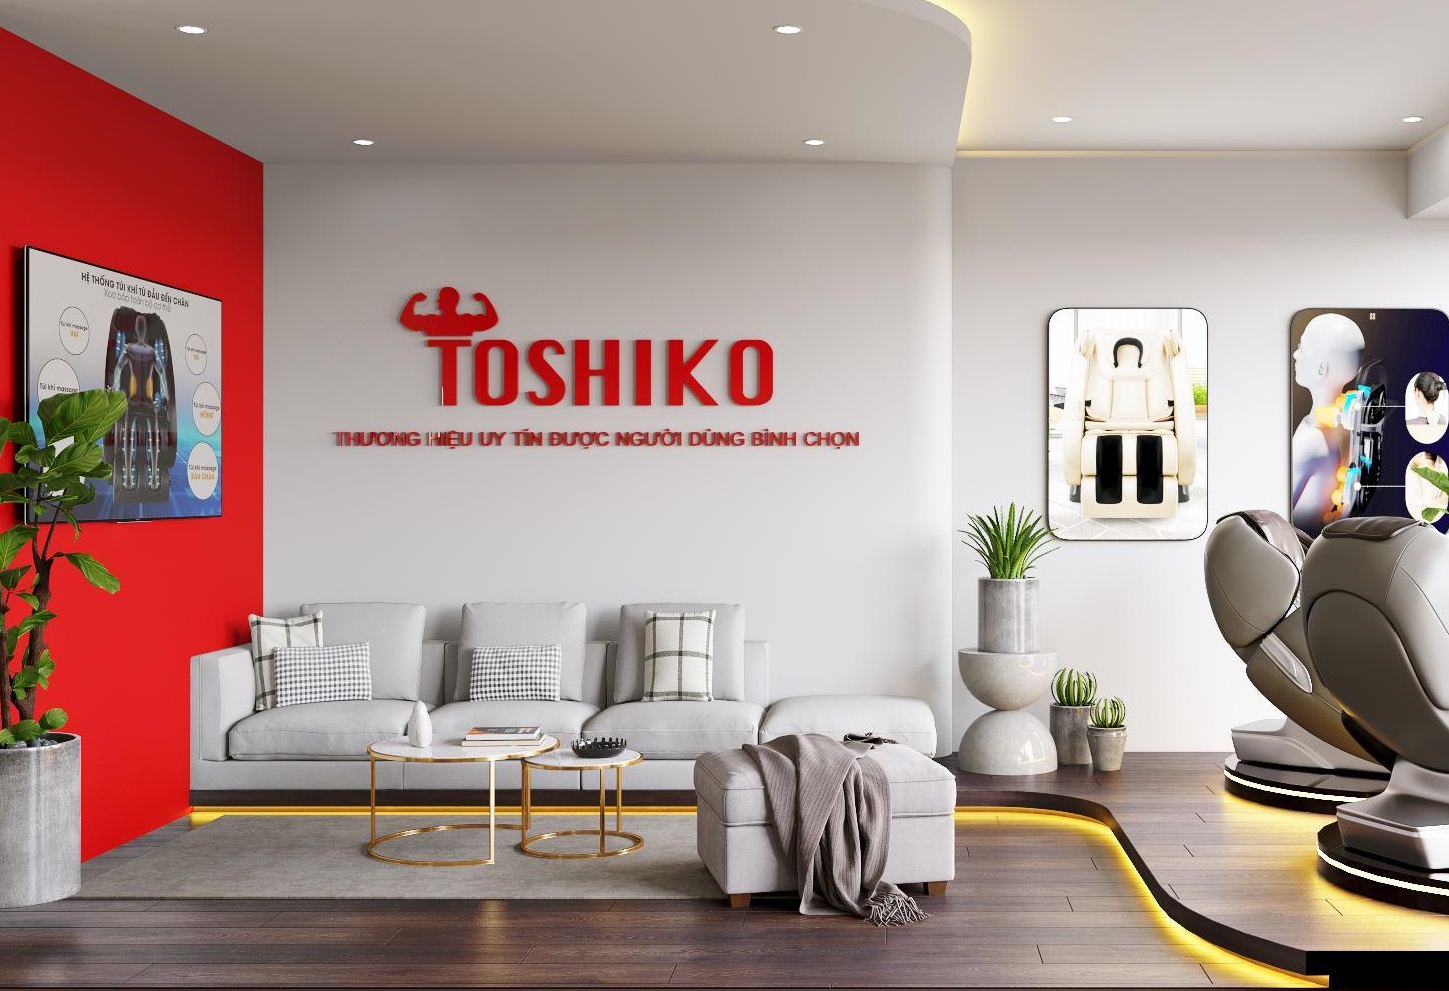 Mua ghế massage chất lượng tốt tại Toshiko